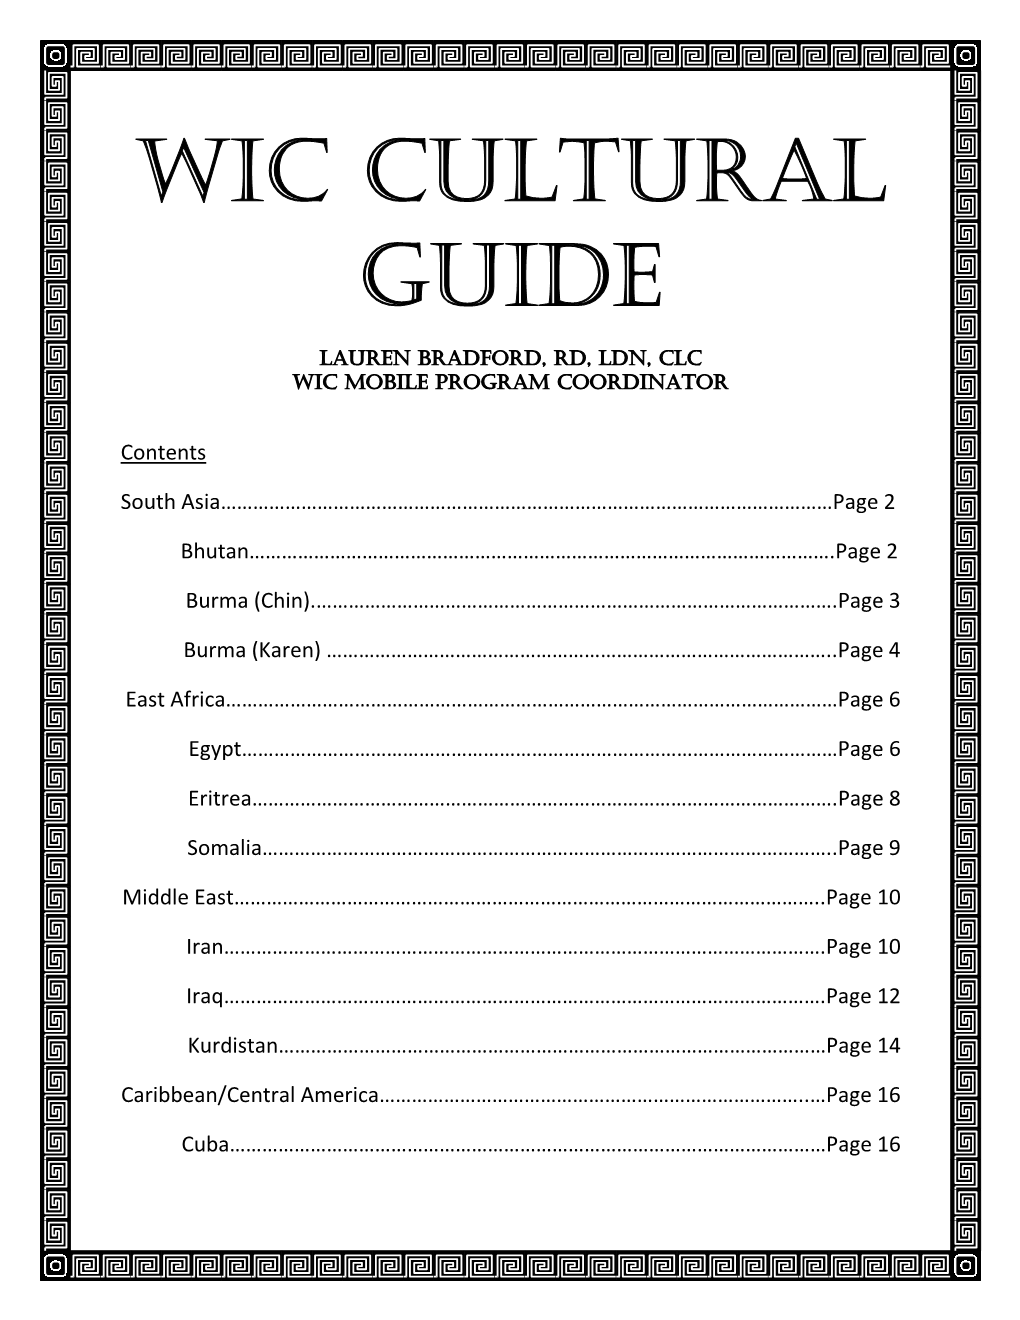 WIC Cultural Guide